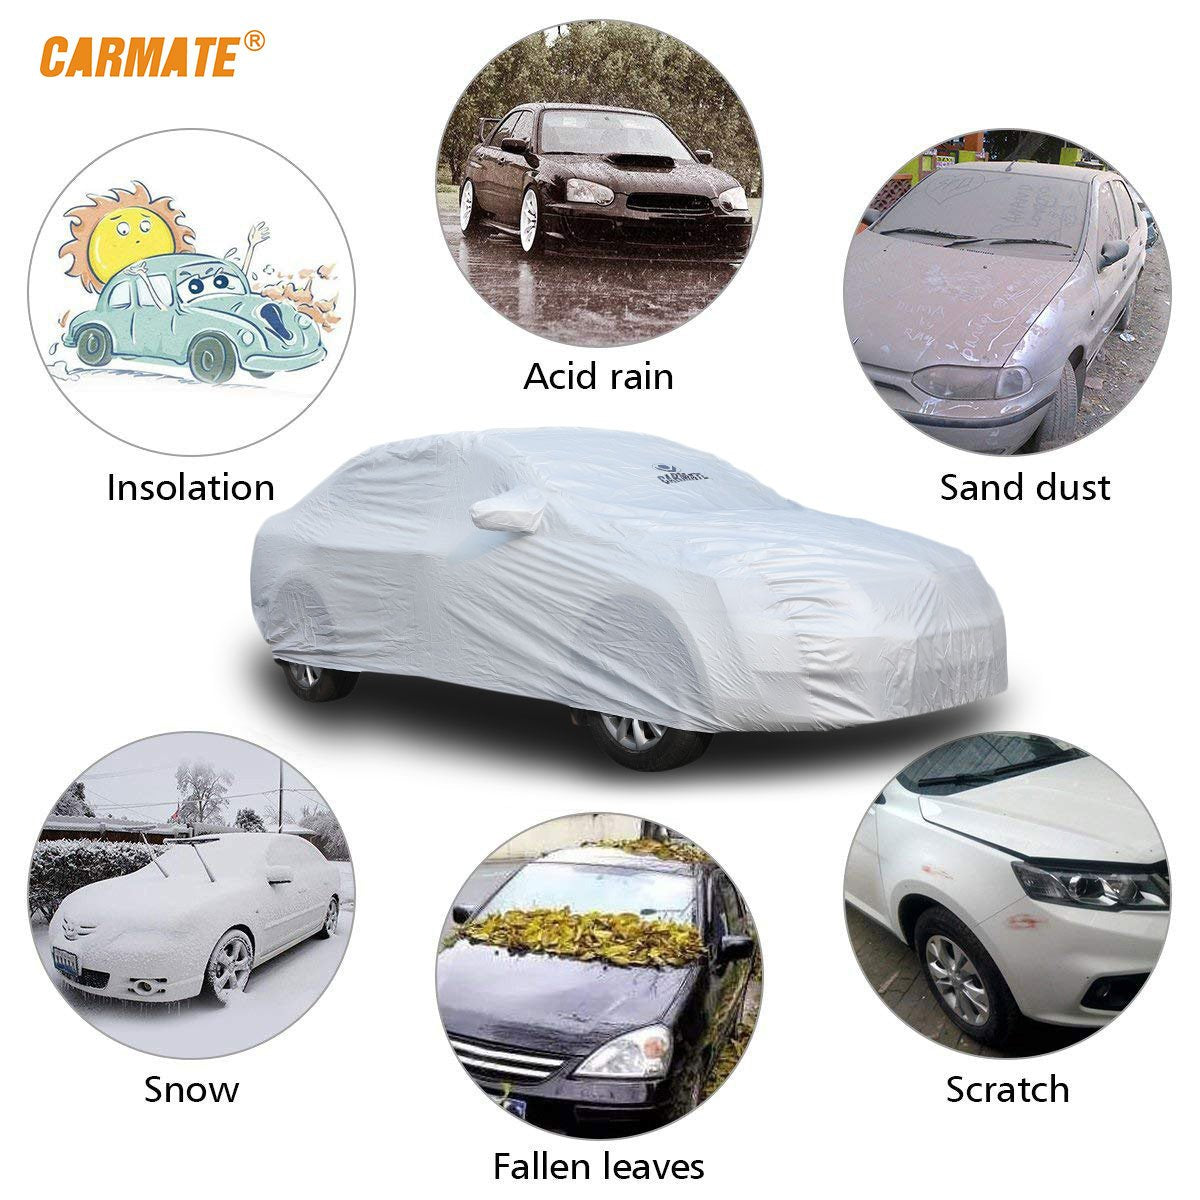 Carmate Premium Car Body Cover Silver Matty (Silver) for  Maruti - Versa - CARMATE®